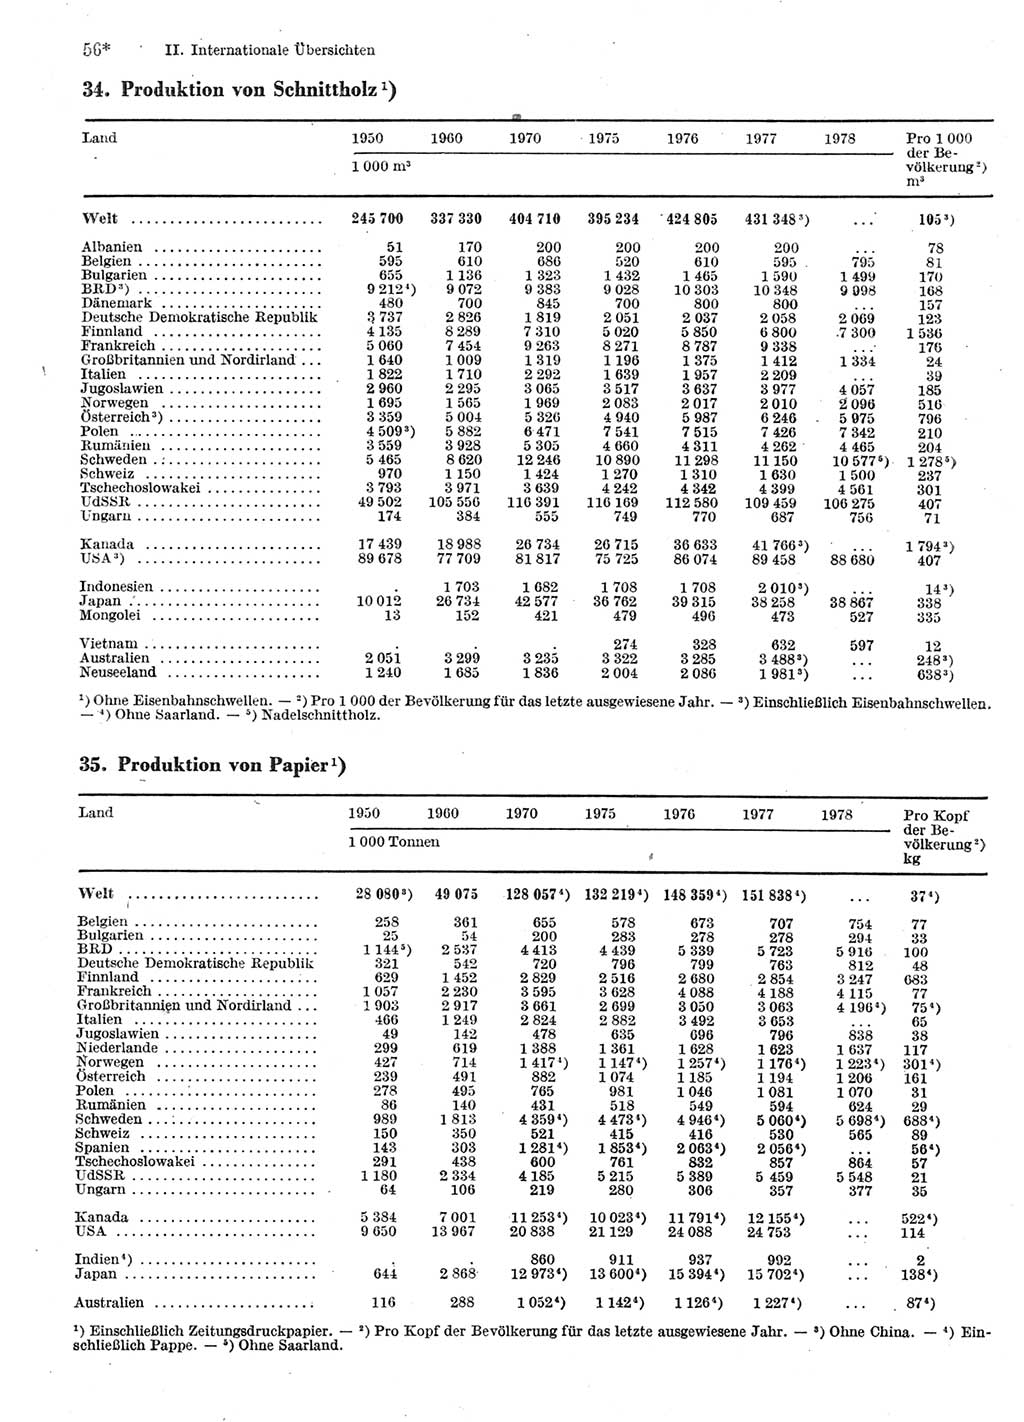 Statistisches Jahrbuch der Deutschen Demokratischen Republik (DDR) 1980, Seite 56 (Stat. Jb. DDR 1980, S. 56)